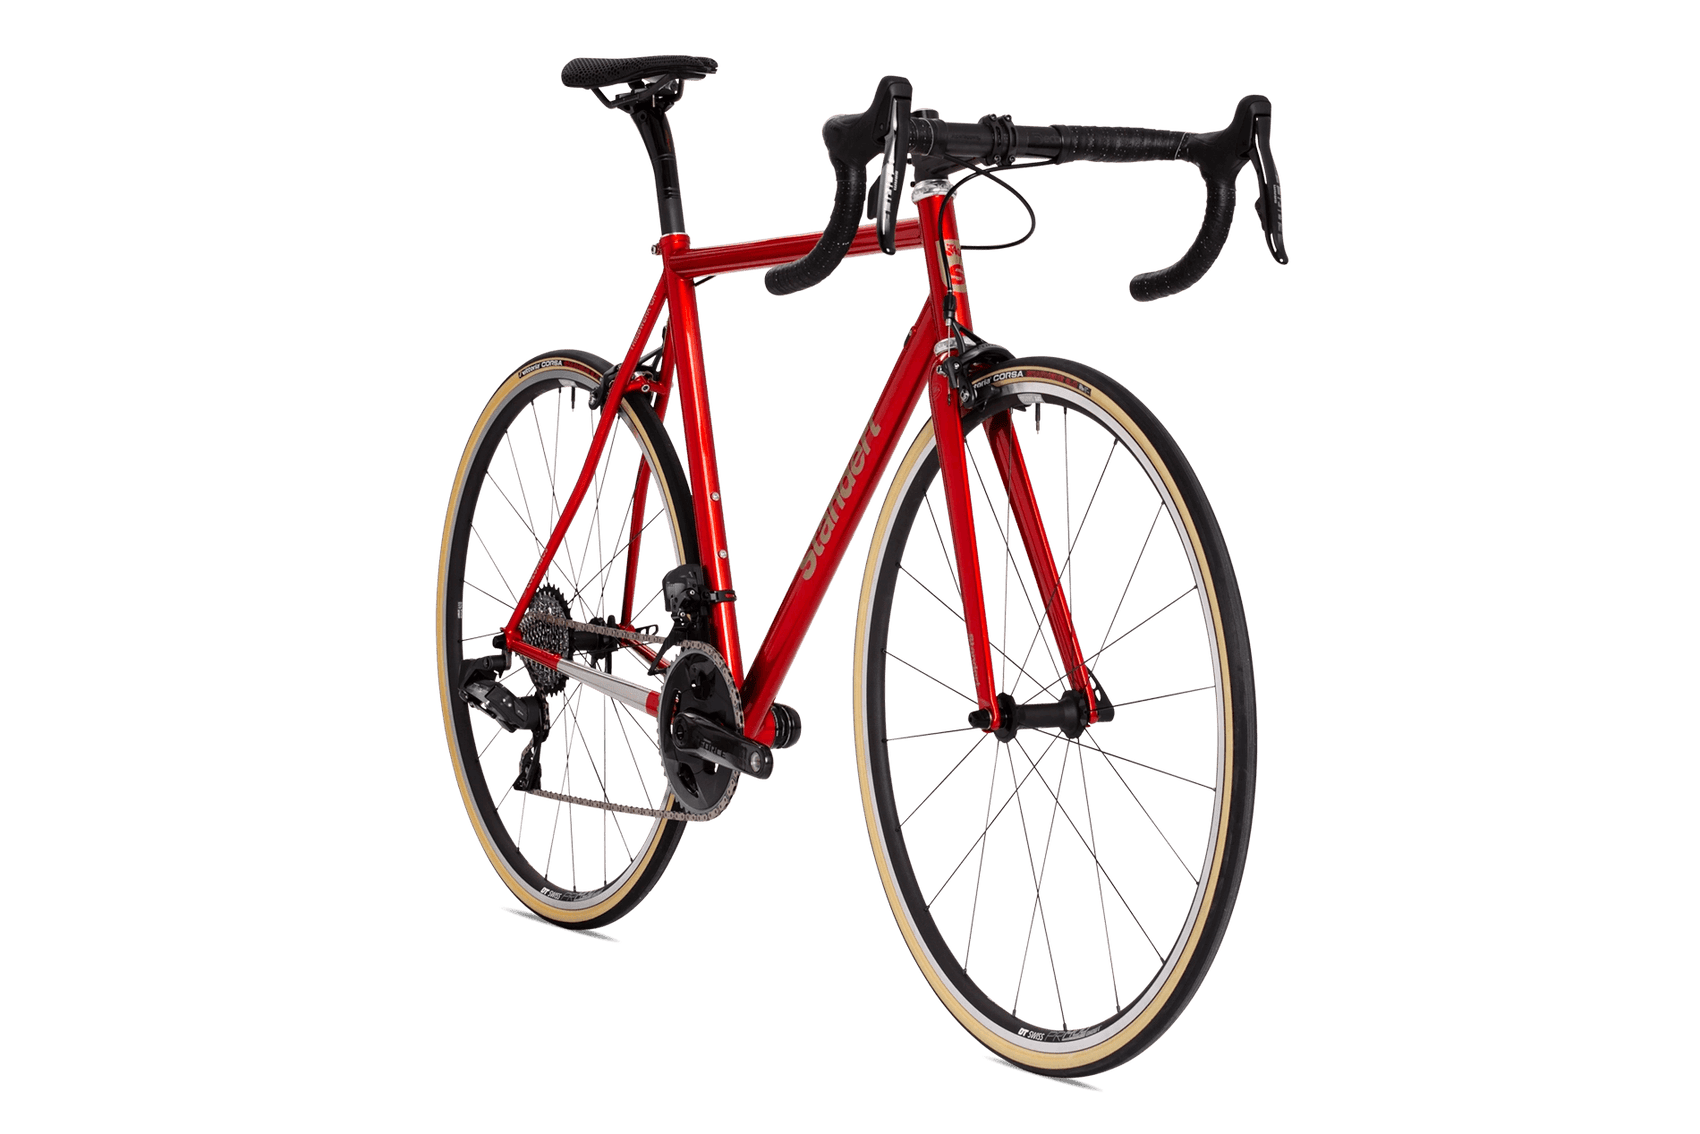 Triebwerk CR | Apero - Standert Bicycles